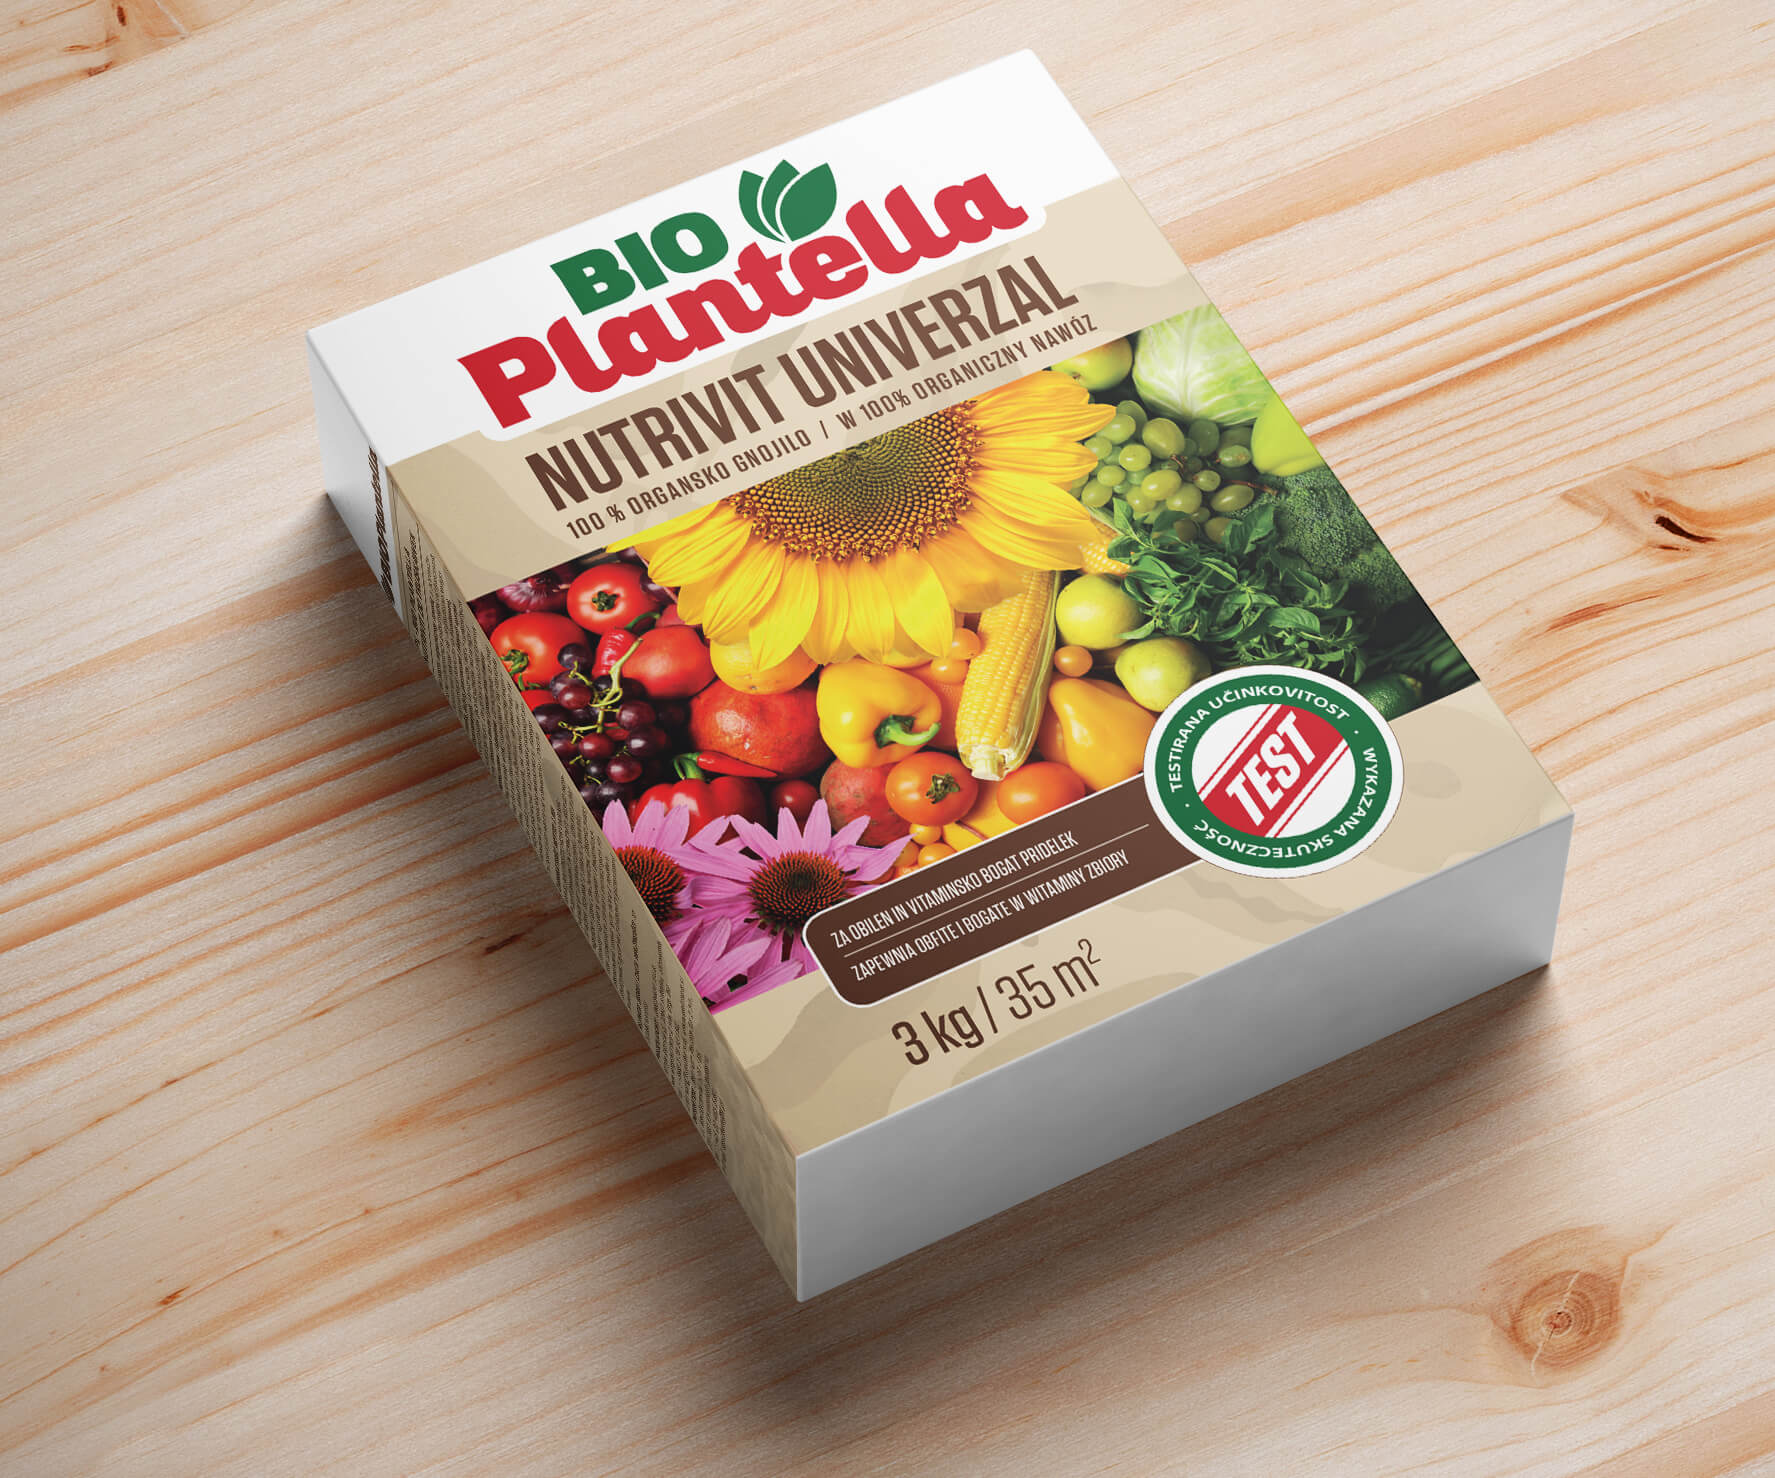 Nawóz organiczny do warzyw, owoców 3 kg. Naturalny nawóz Bio Plantella.